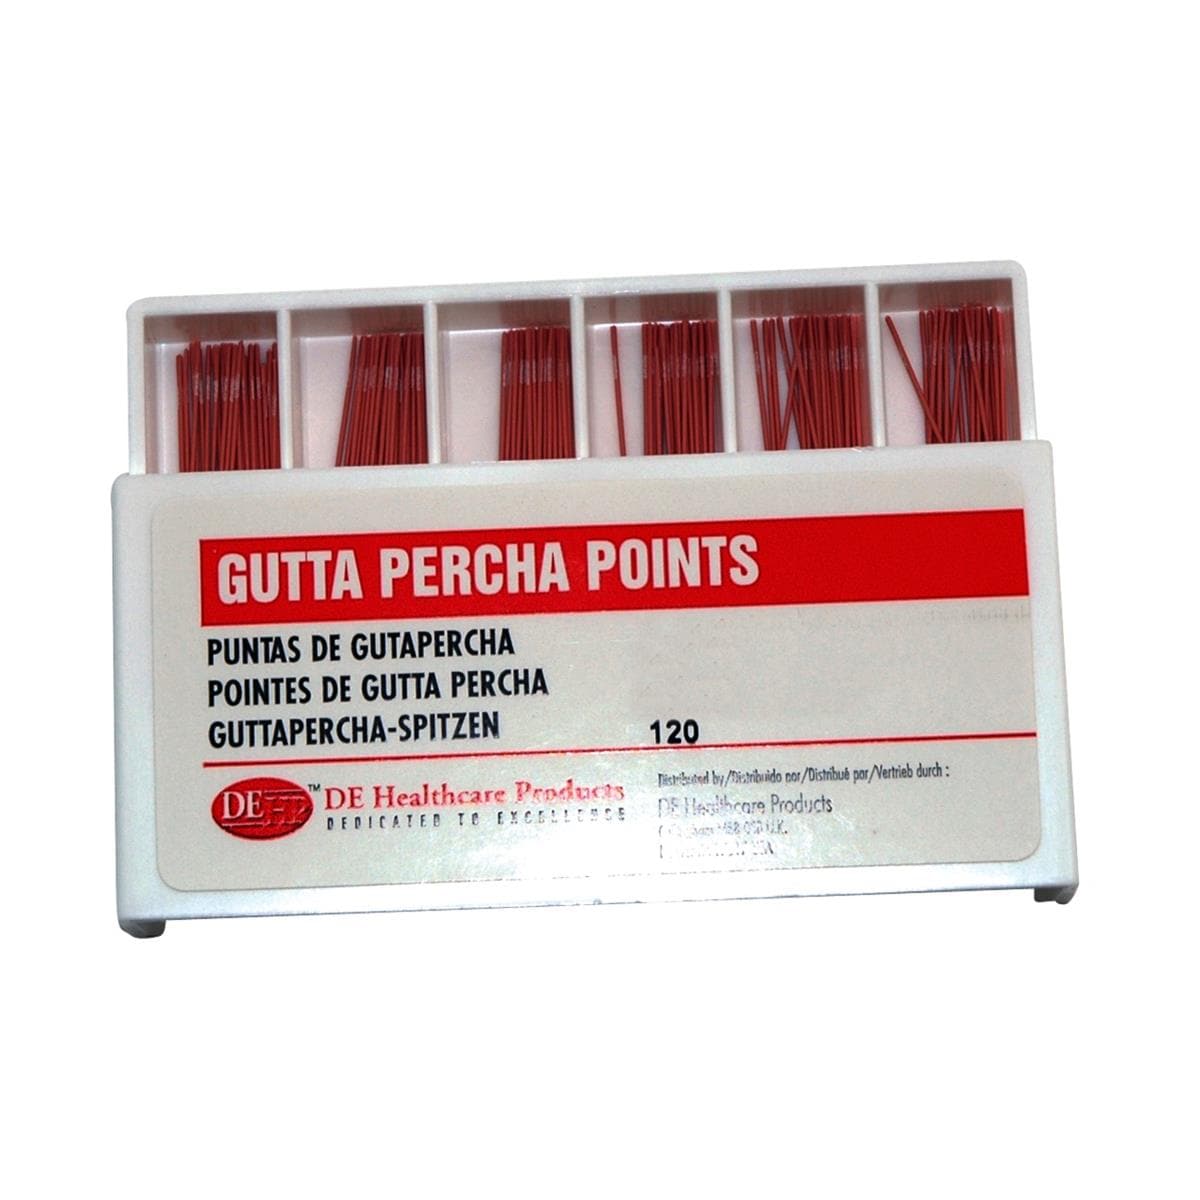 DEHP Gutta Percha Points 20 120pk